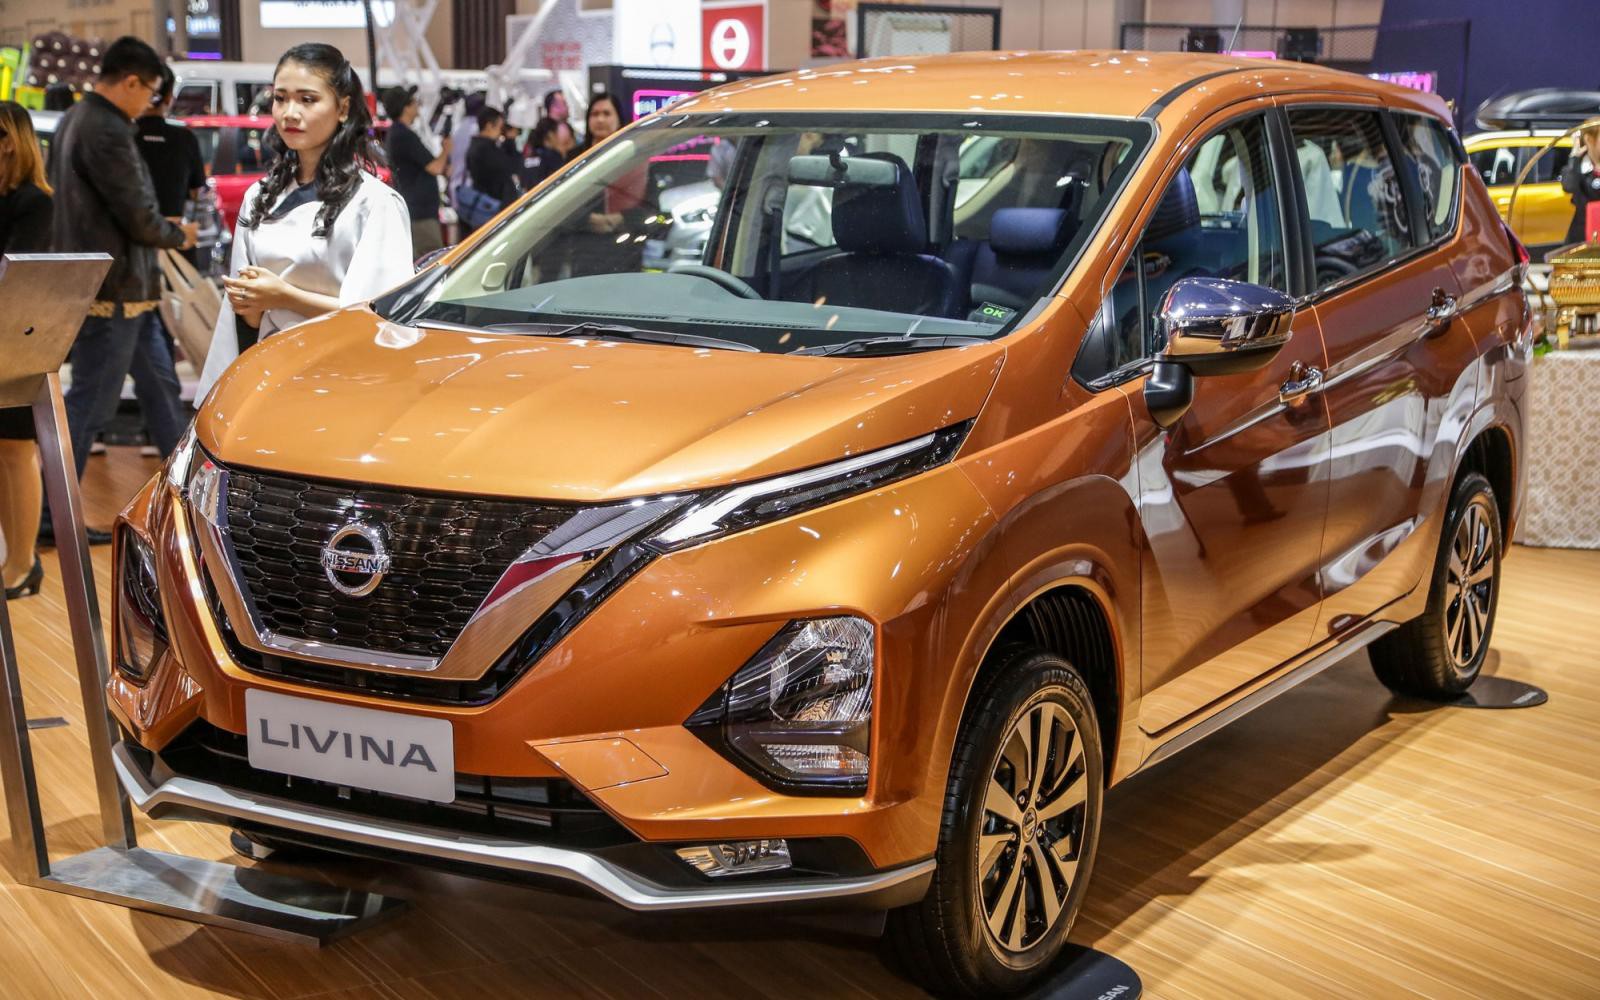 Đại lý nhận đặt cọc Nissan Livina 2019, dự kiến giao xe vào năm sau 1